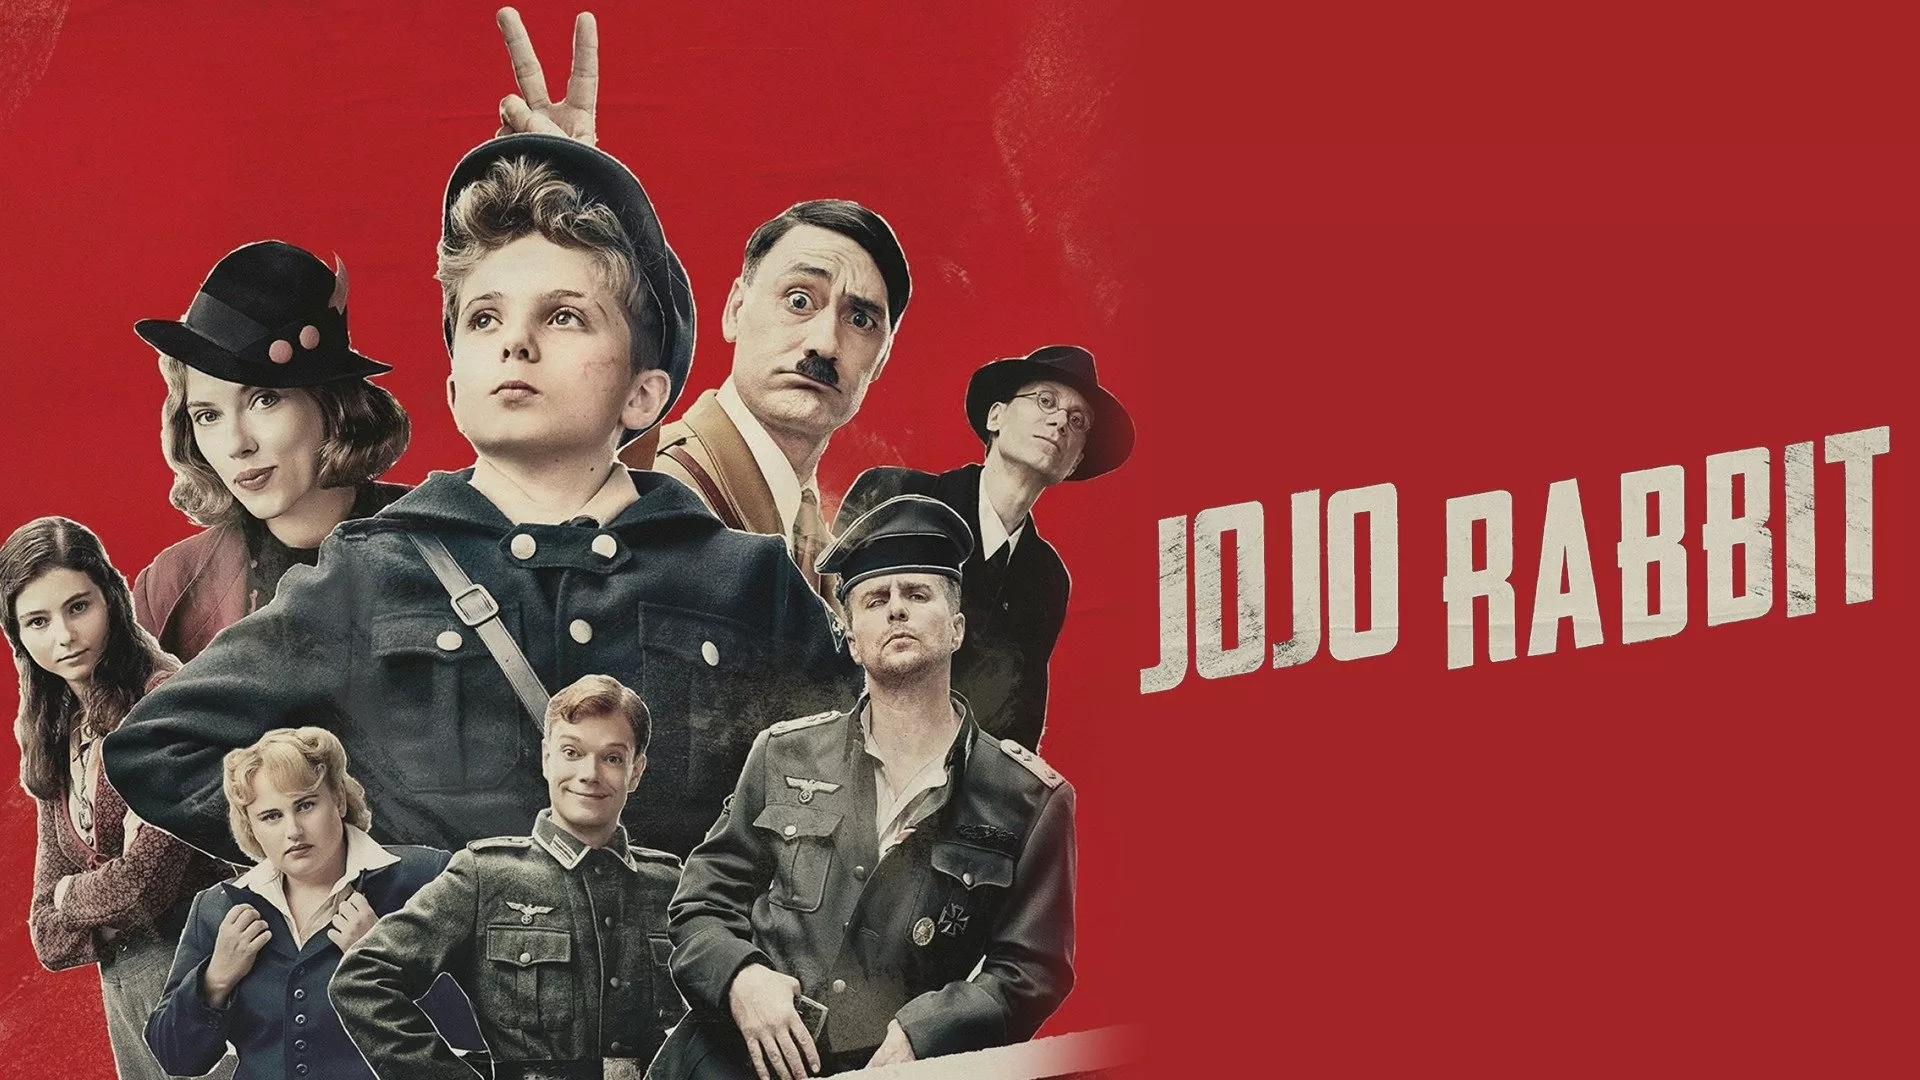 Jojo Rabbit – Possiamo ridere del nazismo?